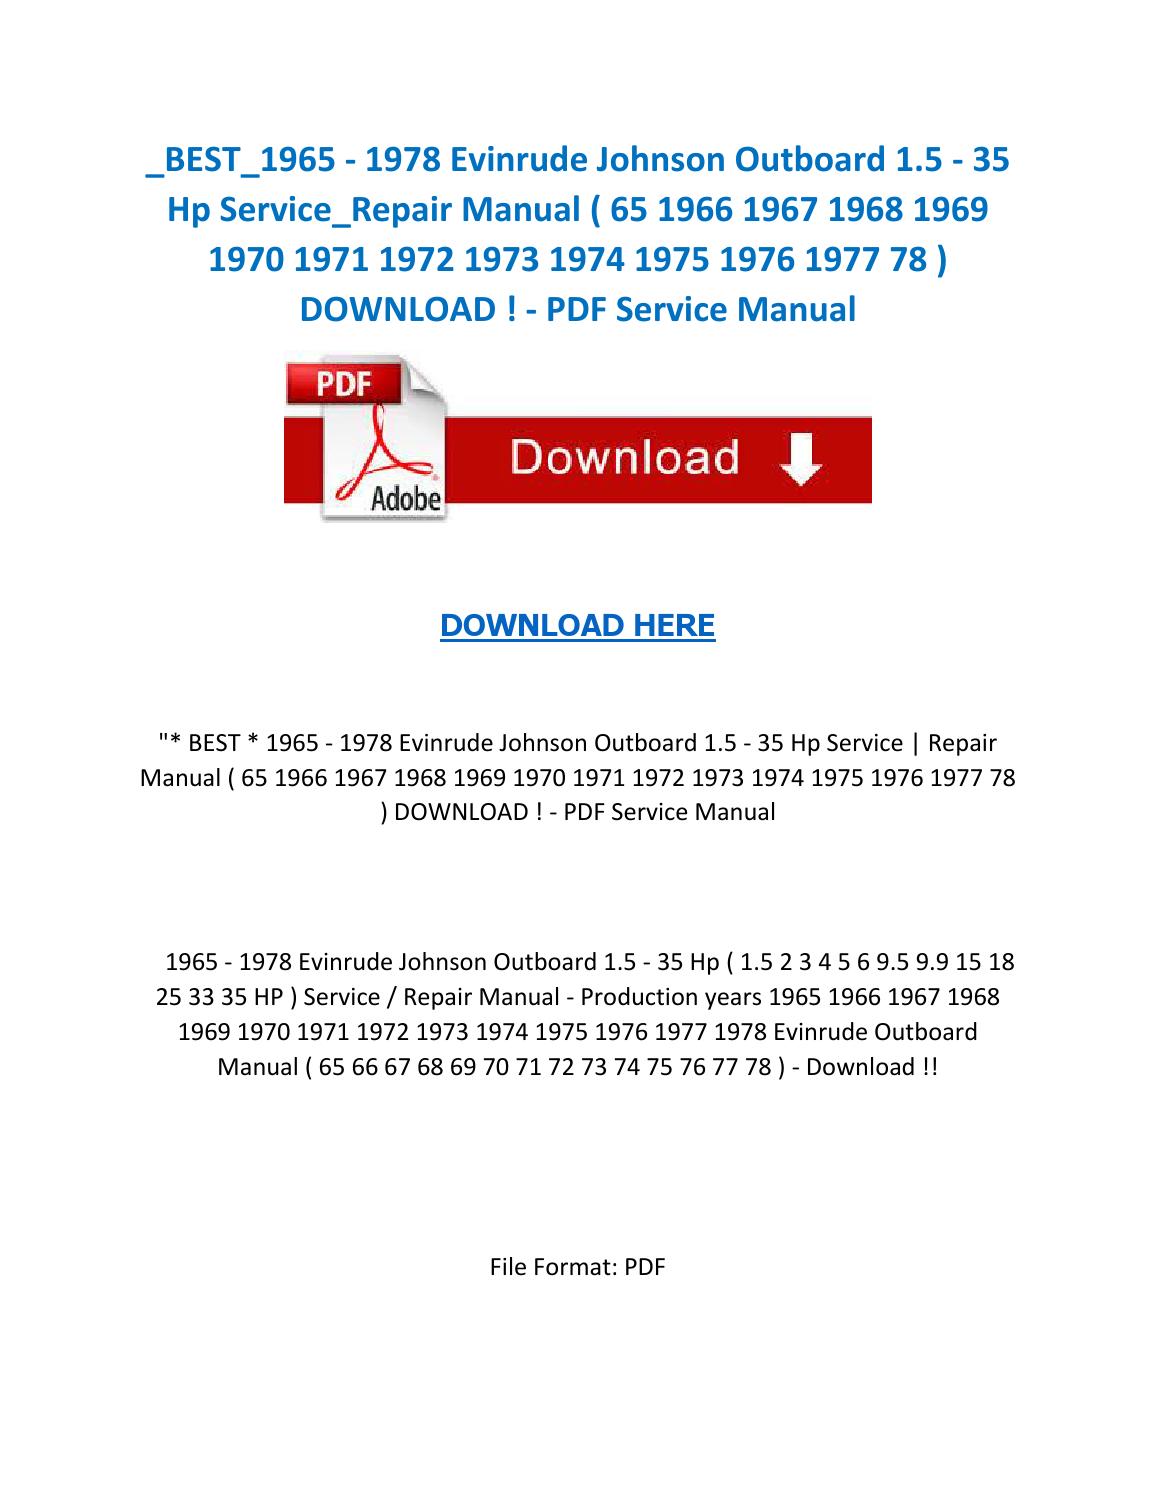 Free Download Evinrude Outboard Repair Manual